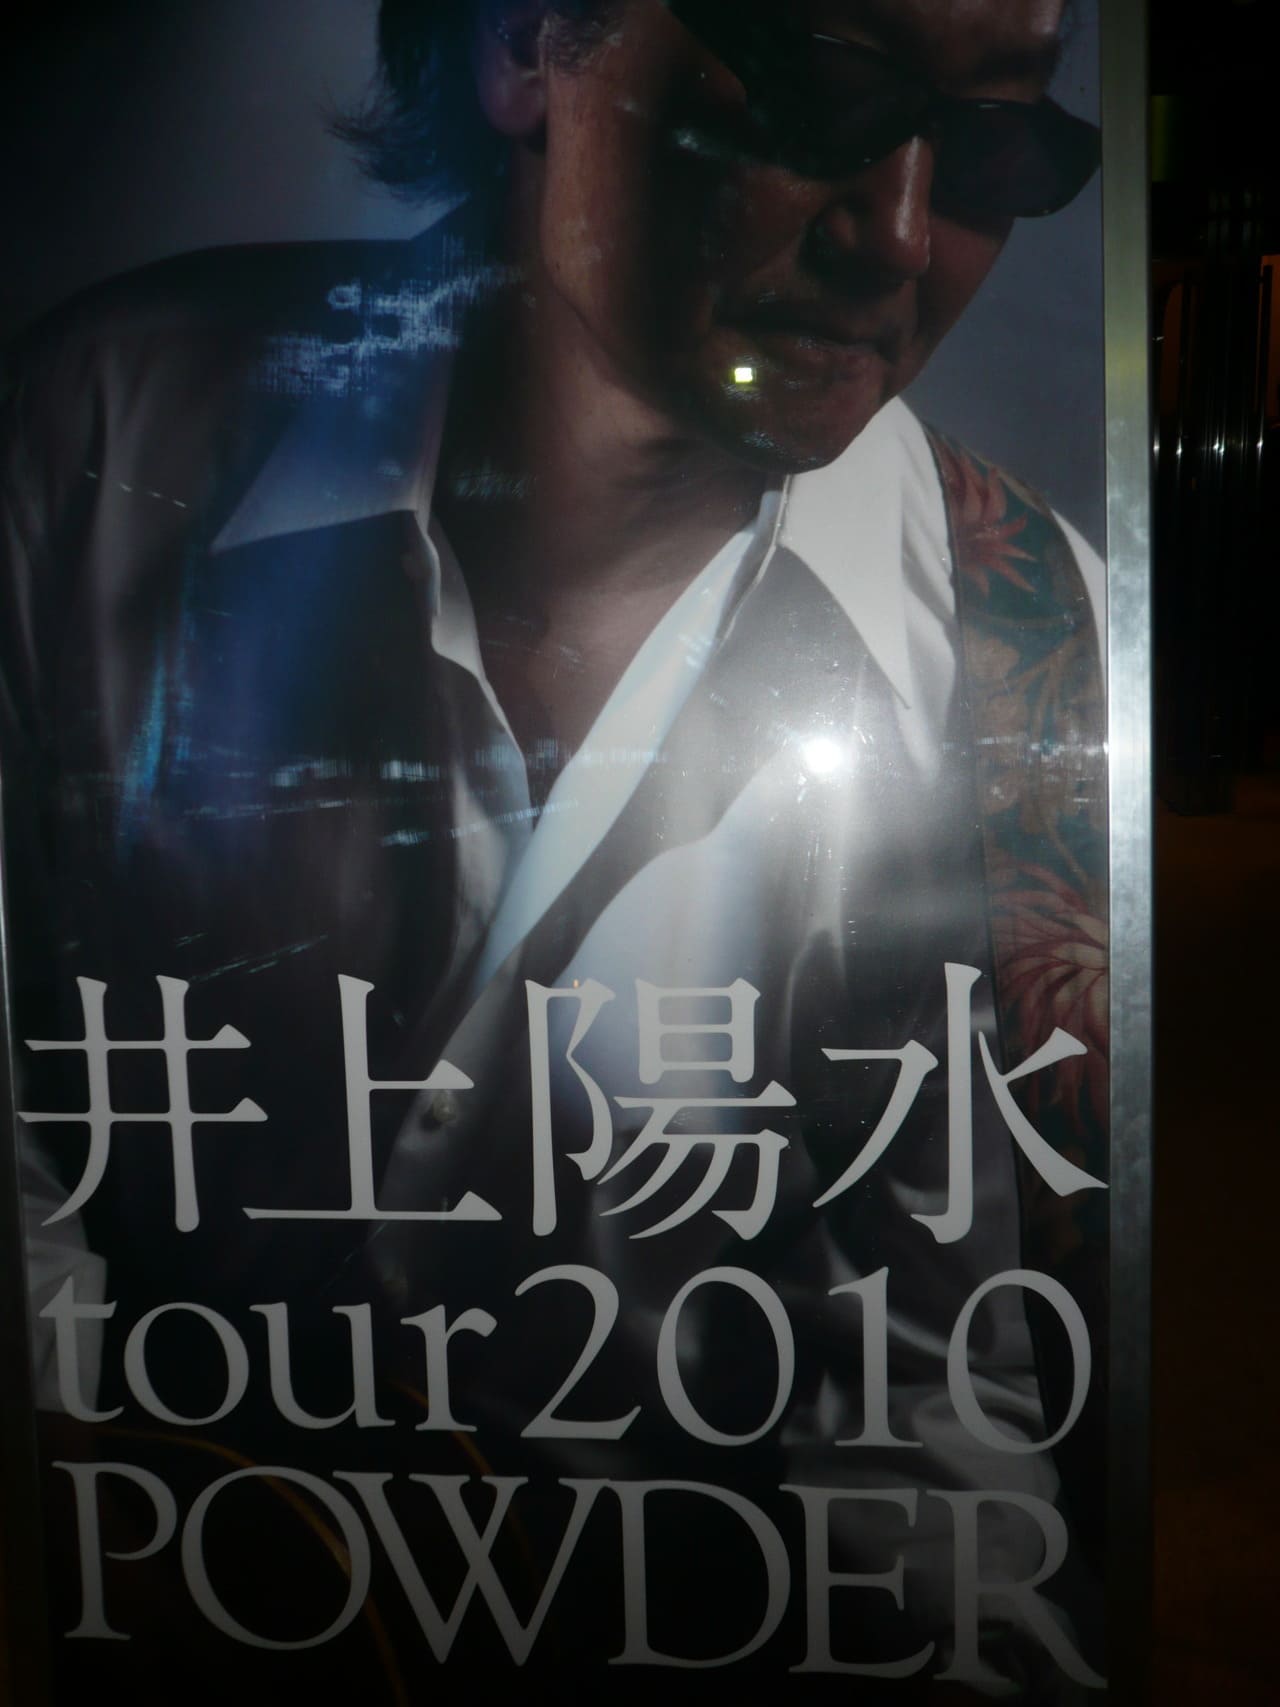 井上陽水 tour 2010 POWDER